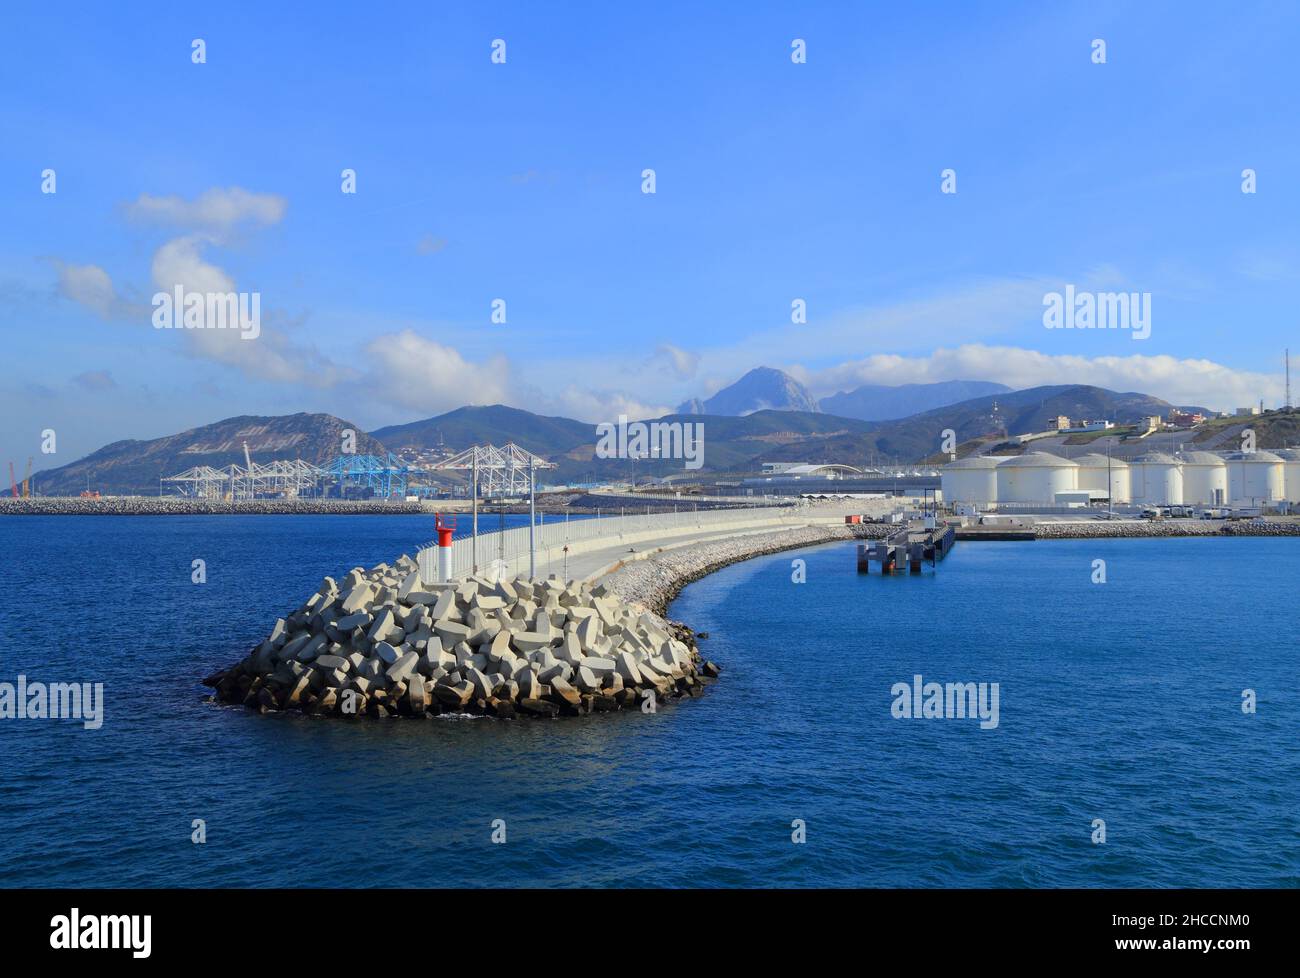 TANGER, MAROC.Vue panoramique du nouveau port de Tanger Med qui est entré en service en 2007.Il a une capacité de manutention de 9 millions de conteneurs. Banque D'Images